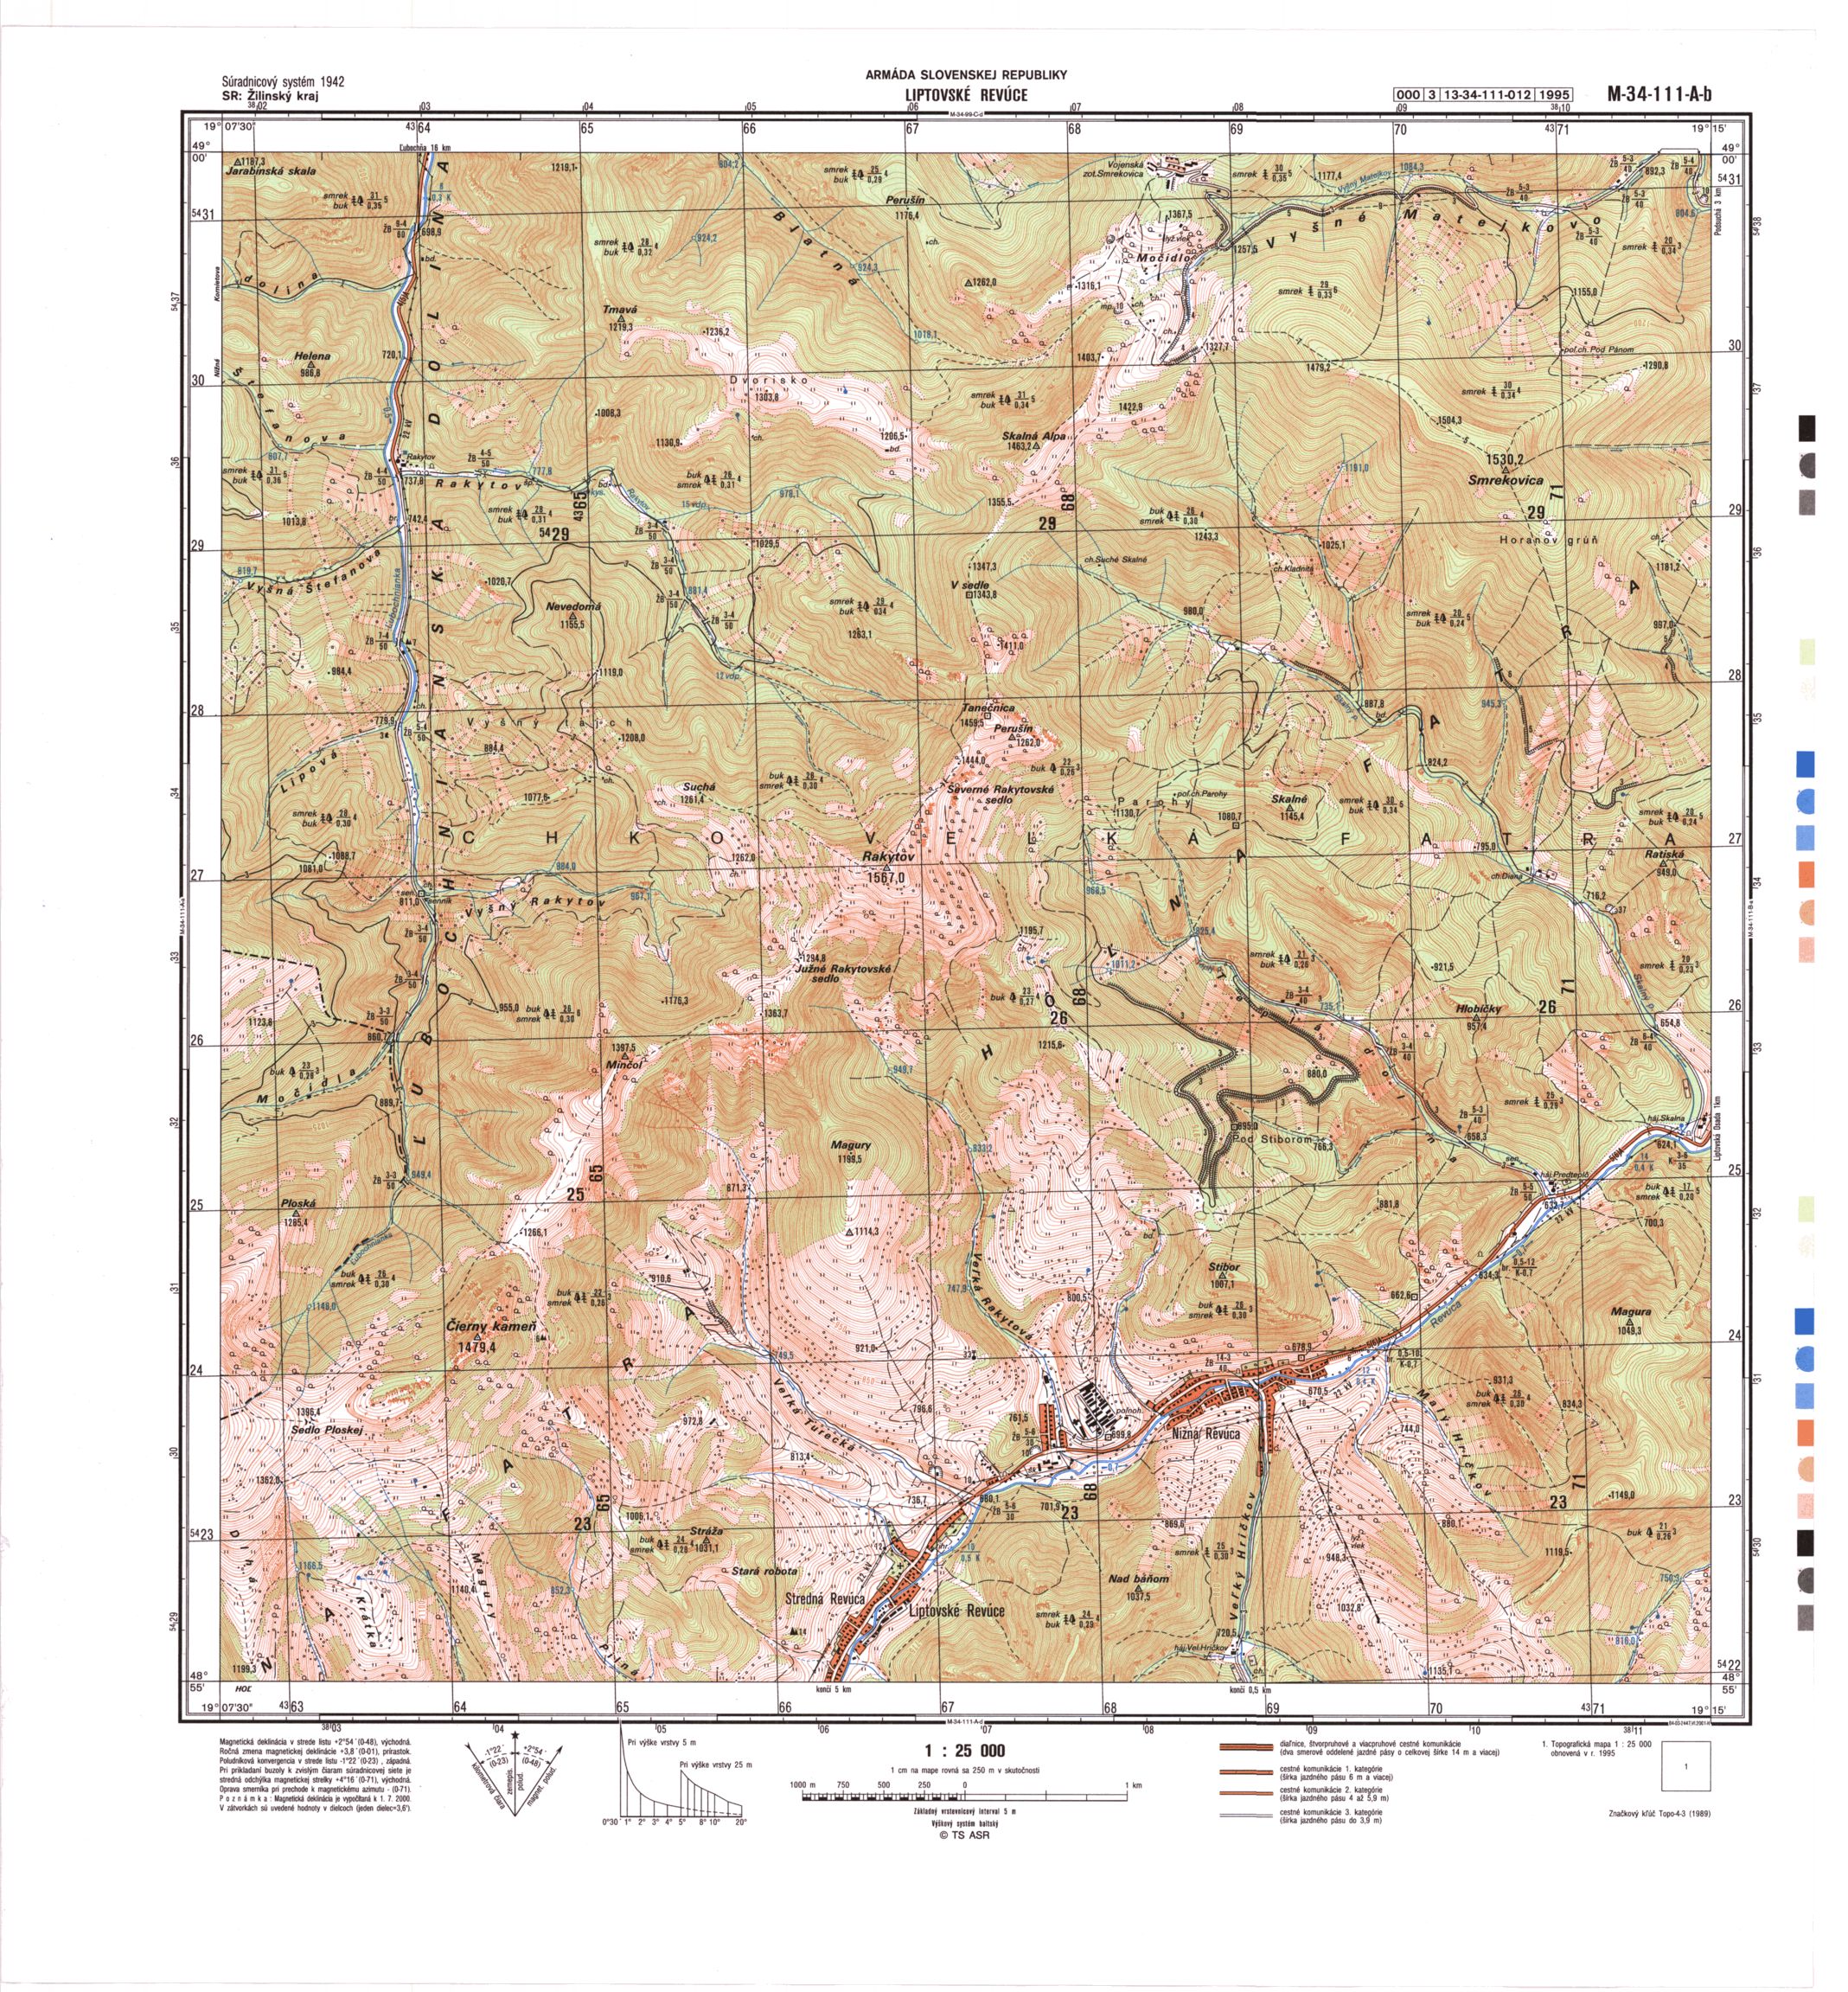 Słowacja 25k Military Maps - m34-111ab.jpg